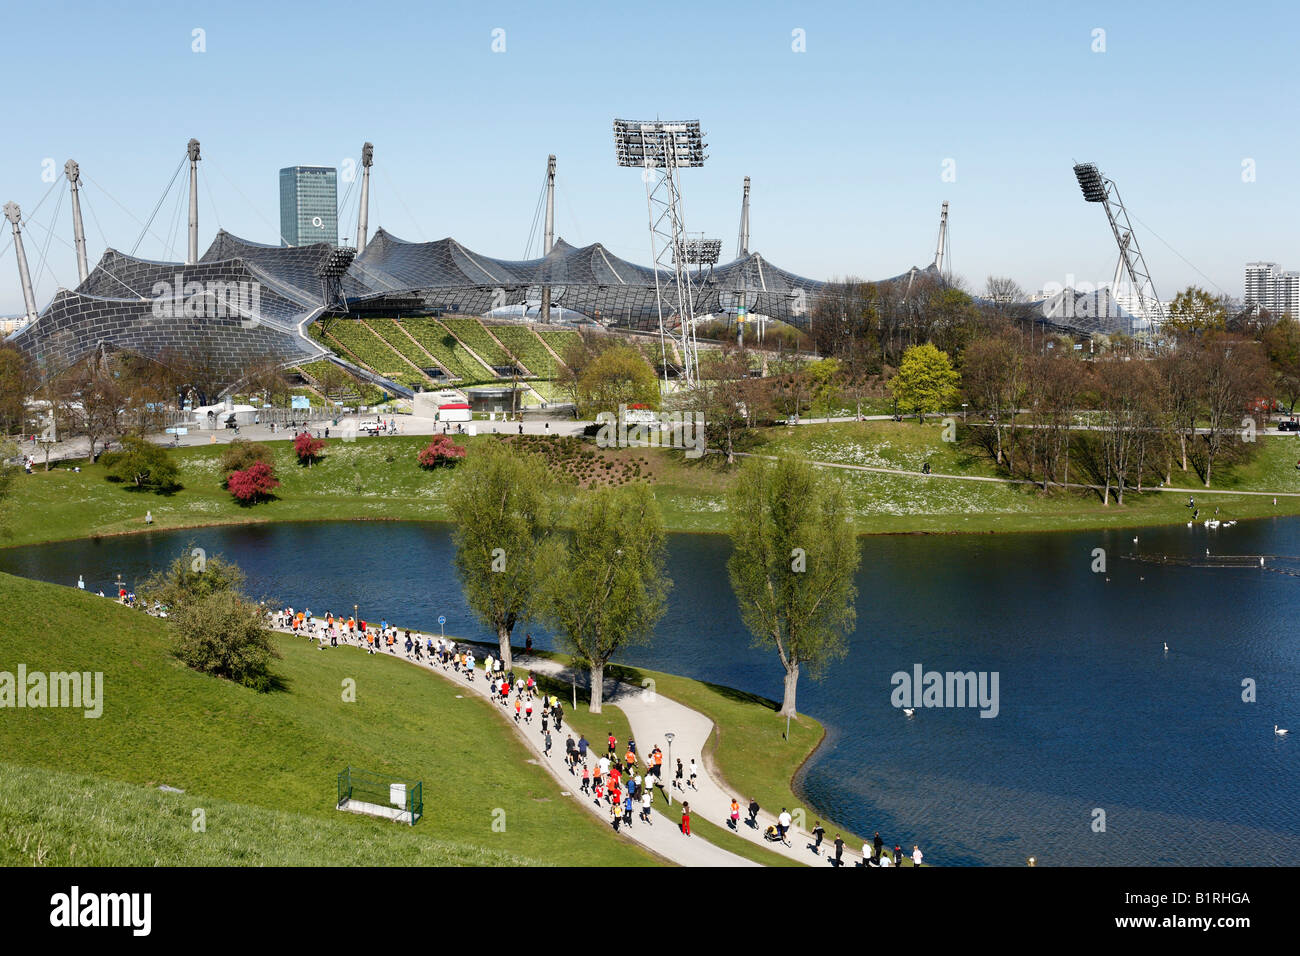 Stade olympique dans le parc olympique, les coureurs de compétition au demi-marathon, Munich, Bavaria, Germany, Europe Banque D'Images